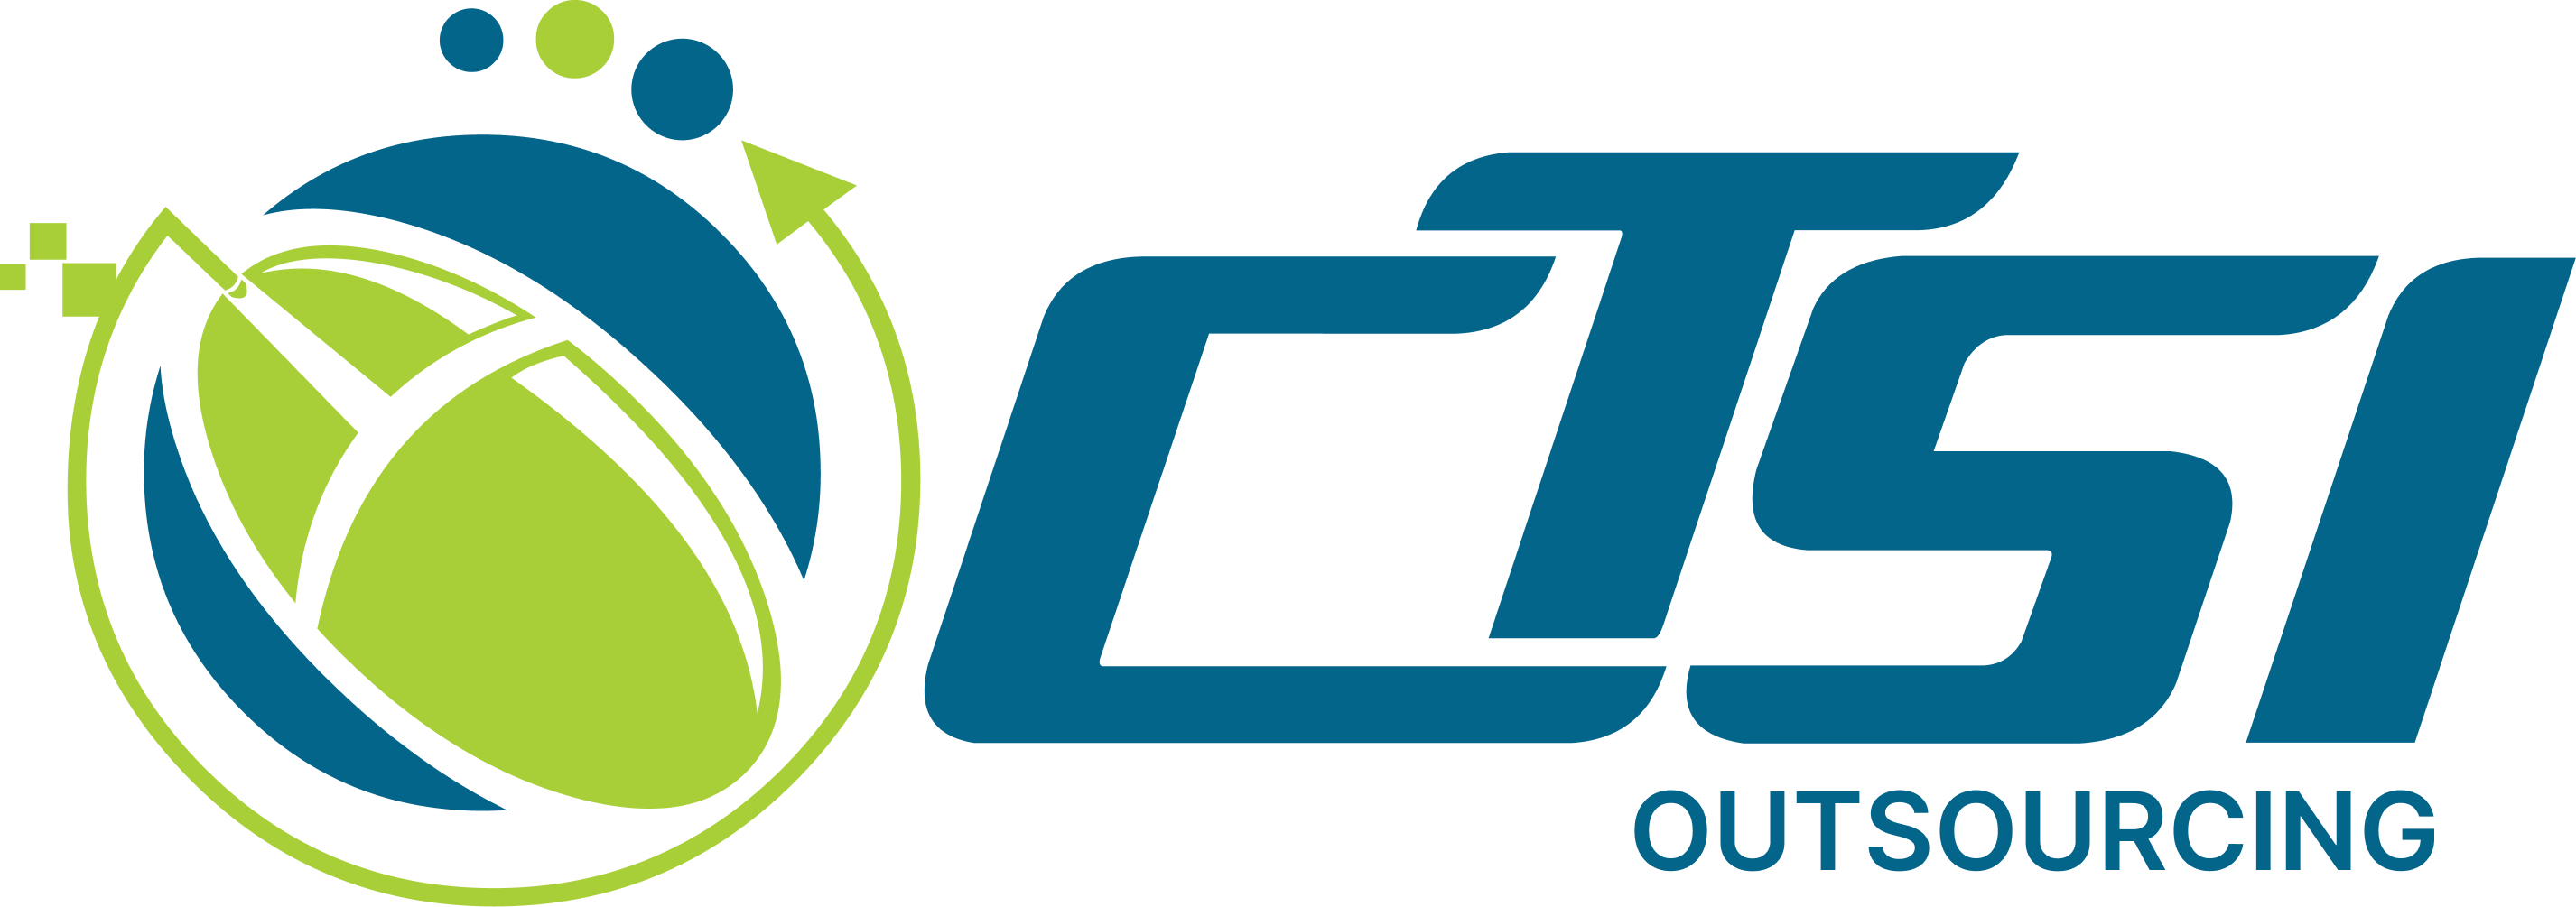 CTSI Outsourcing, Inc. Logo